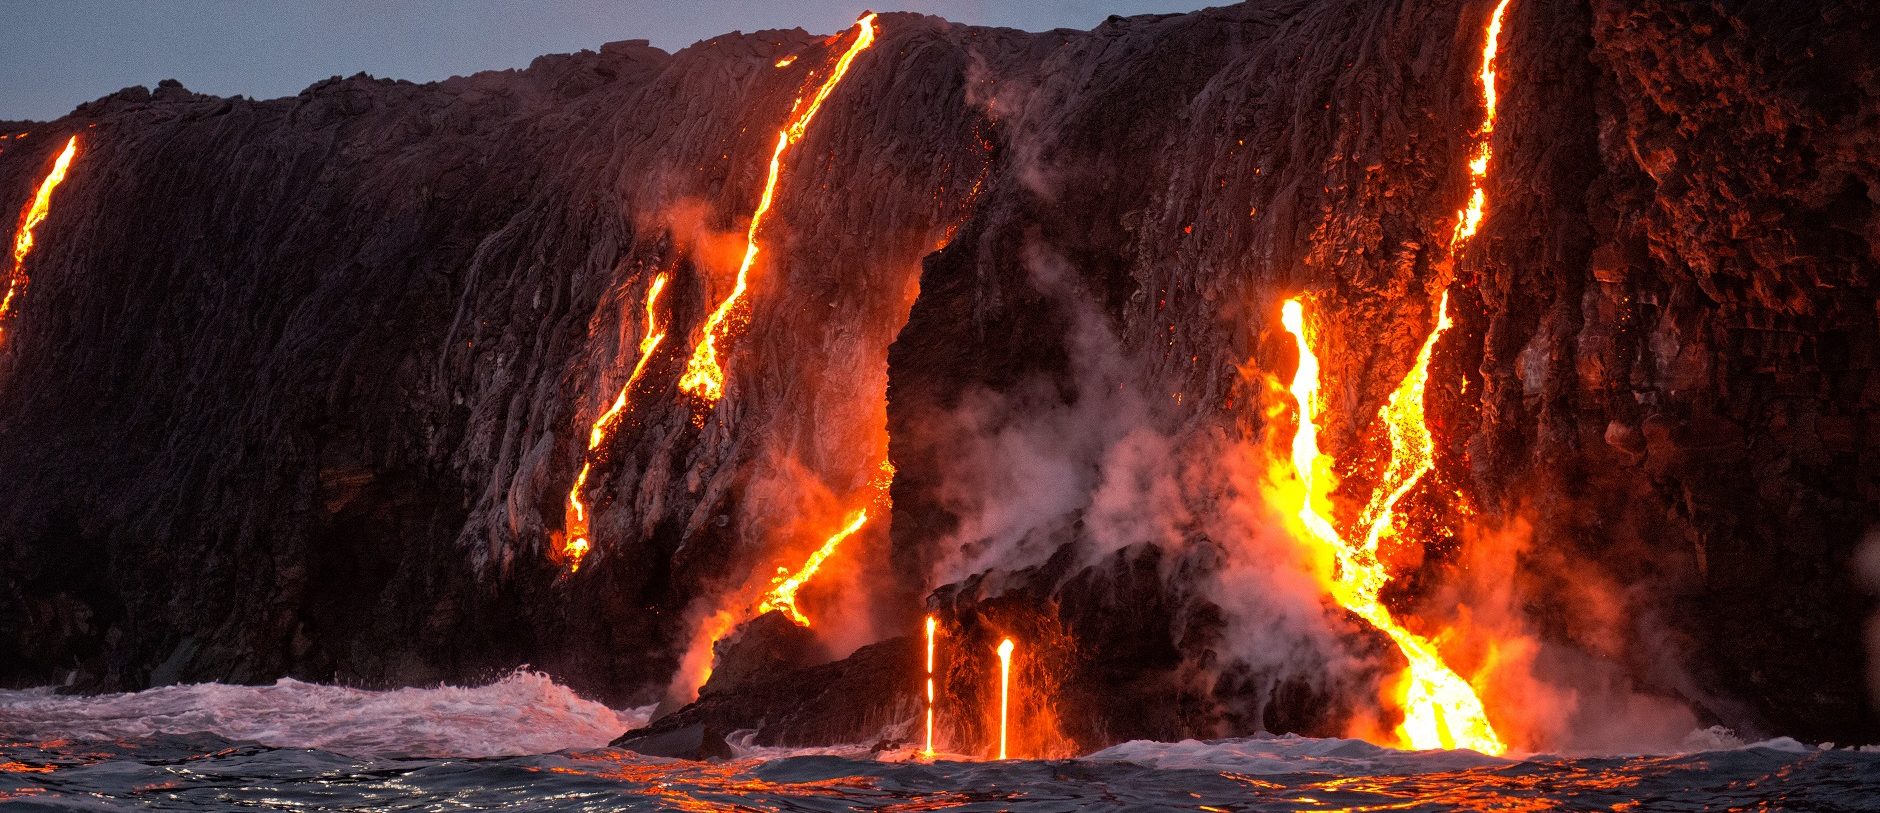 Lava from Kilauea volcano entering ocean, Big Island in Hawaii.